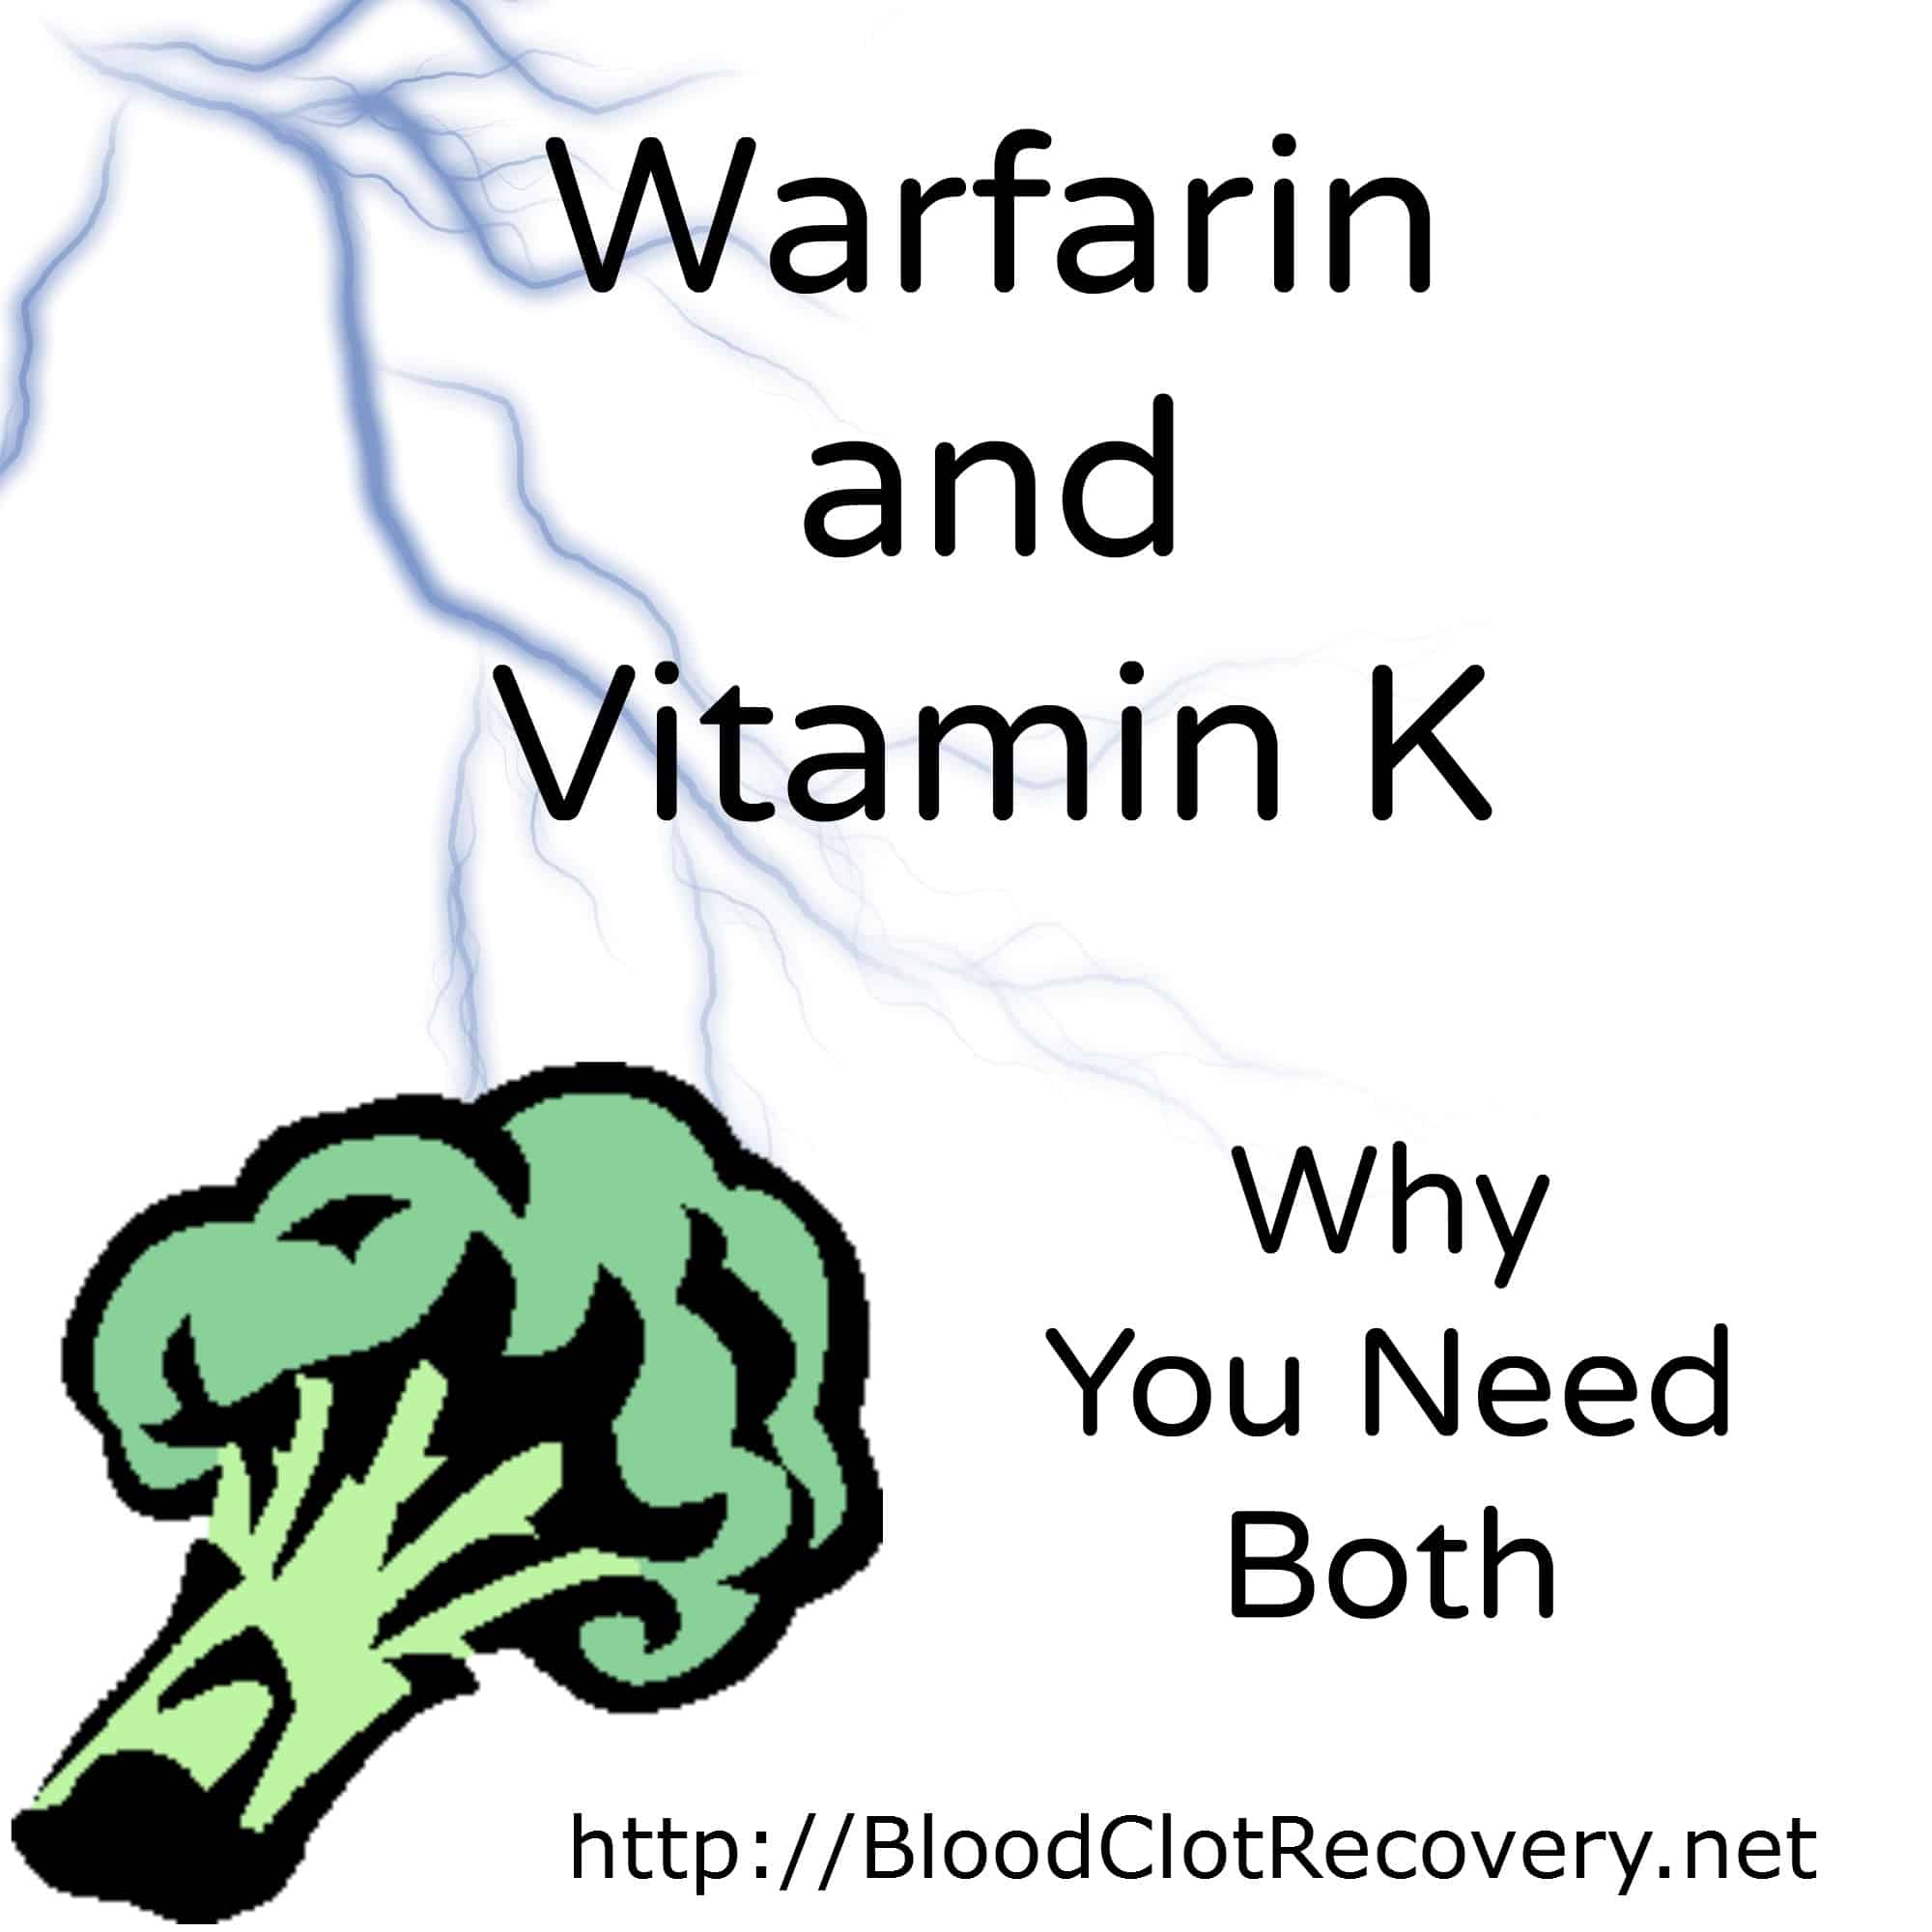 Warfarin and Vitamin K